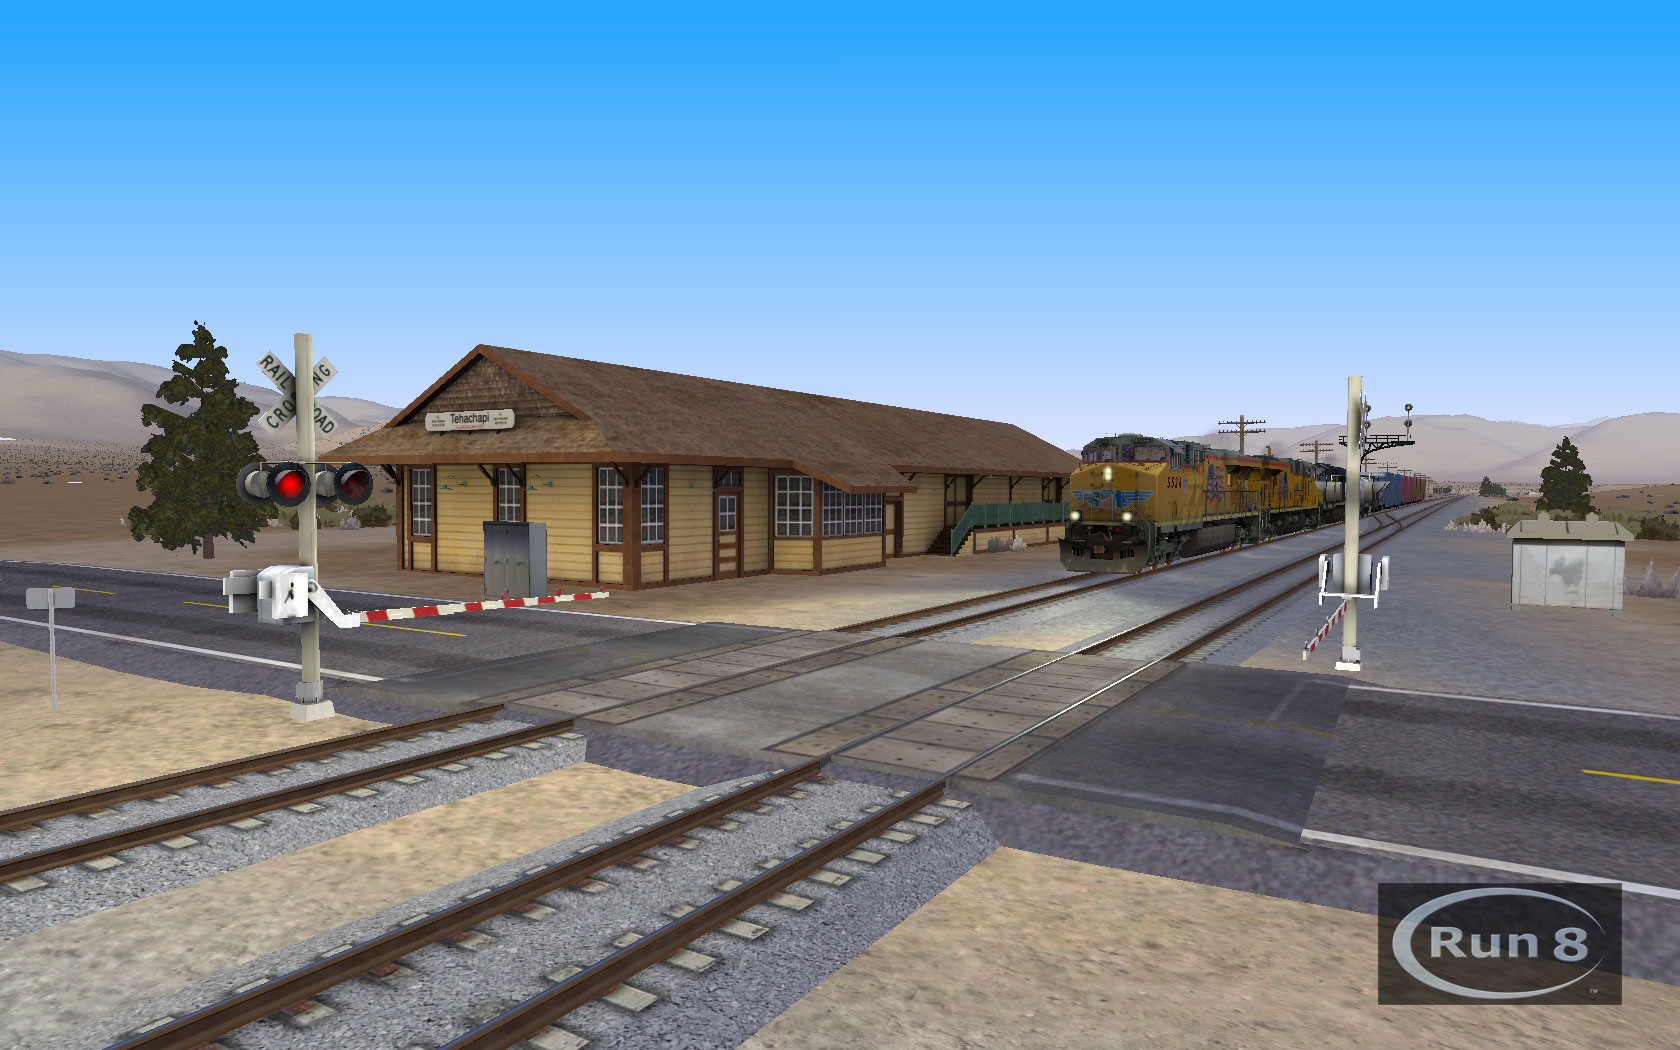 download run 8 train simulator